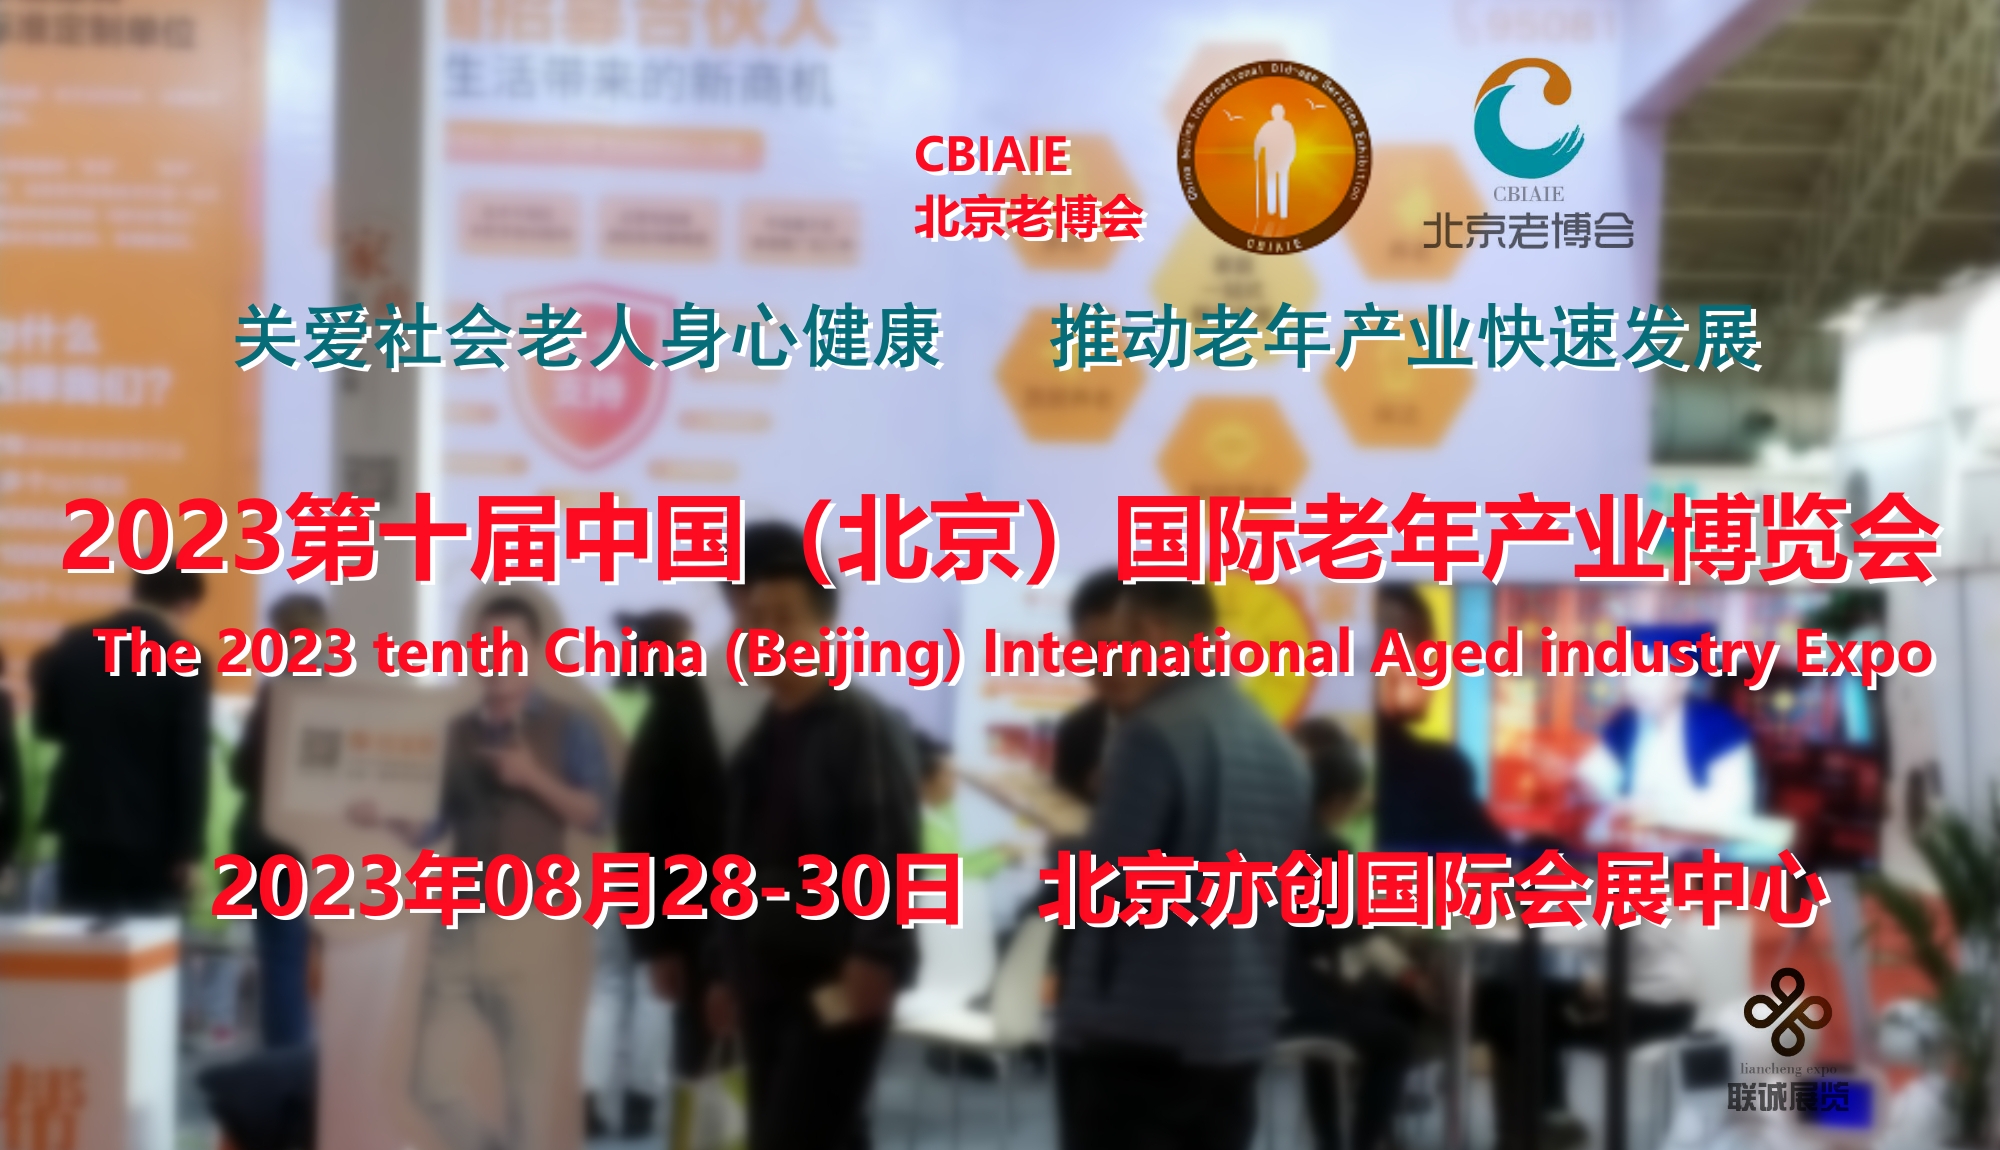 2023北京老博会，北京老龄生活用品展览会8月28日开幕